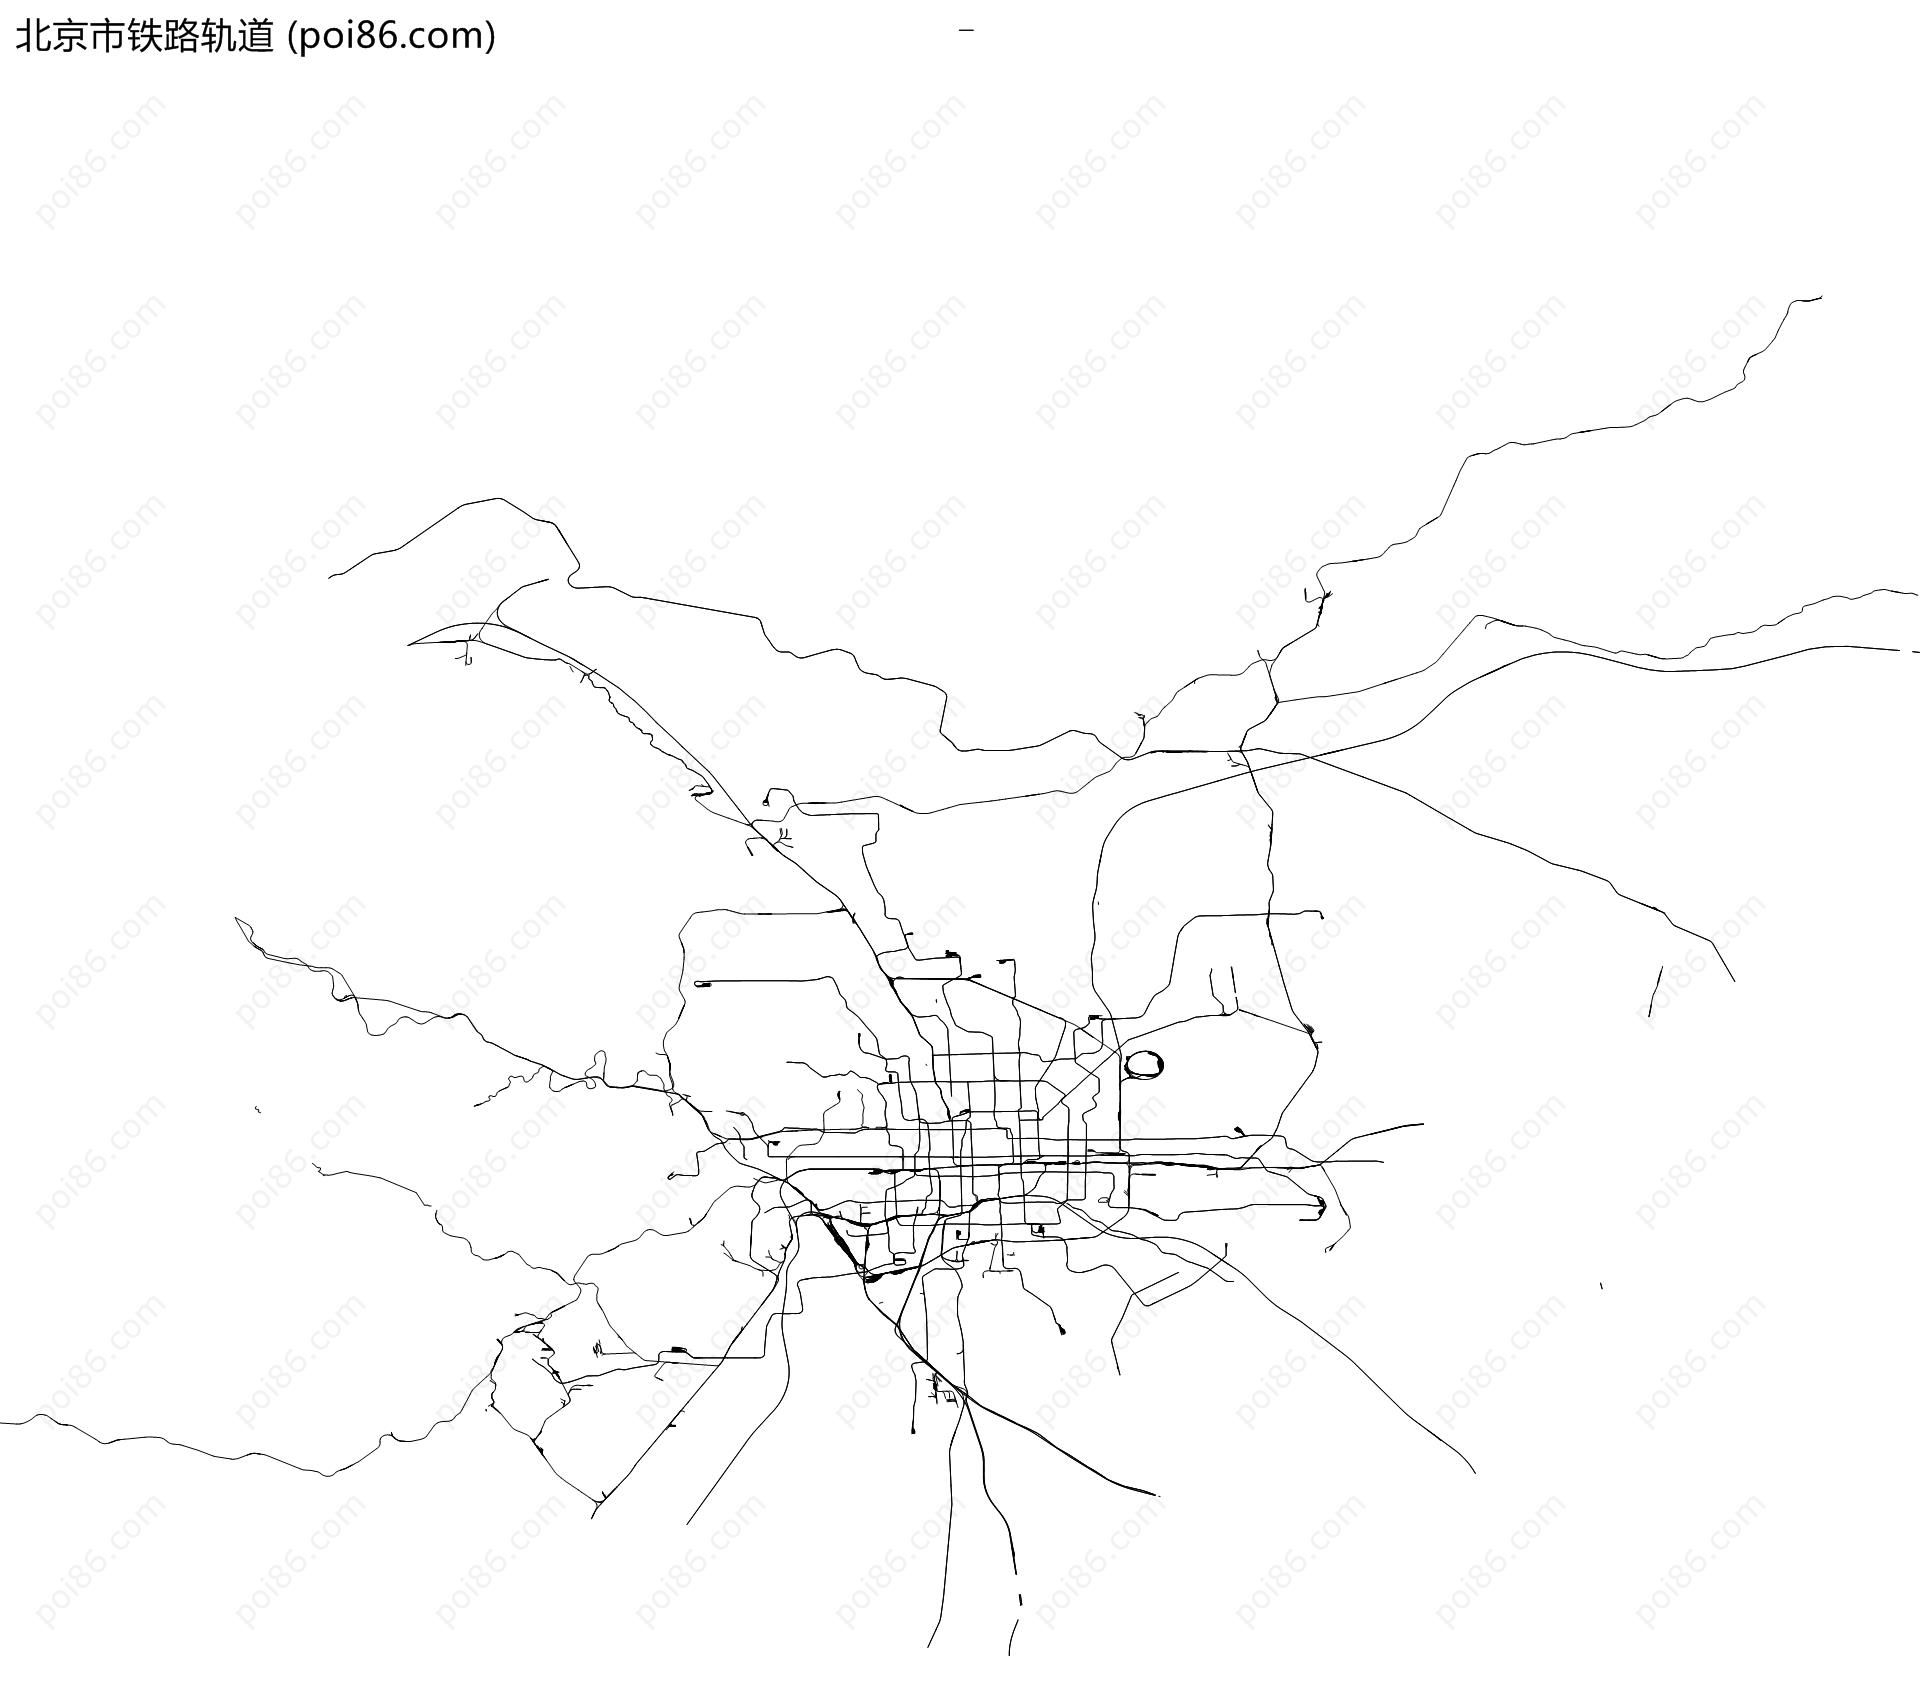 北京市铁路轨道地图